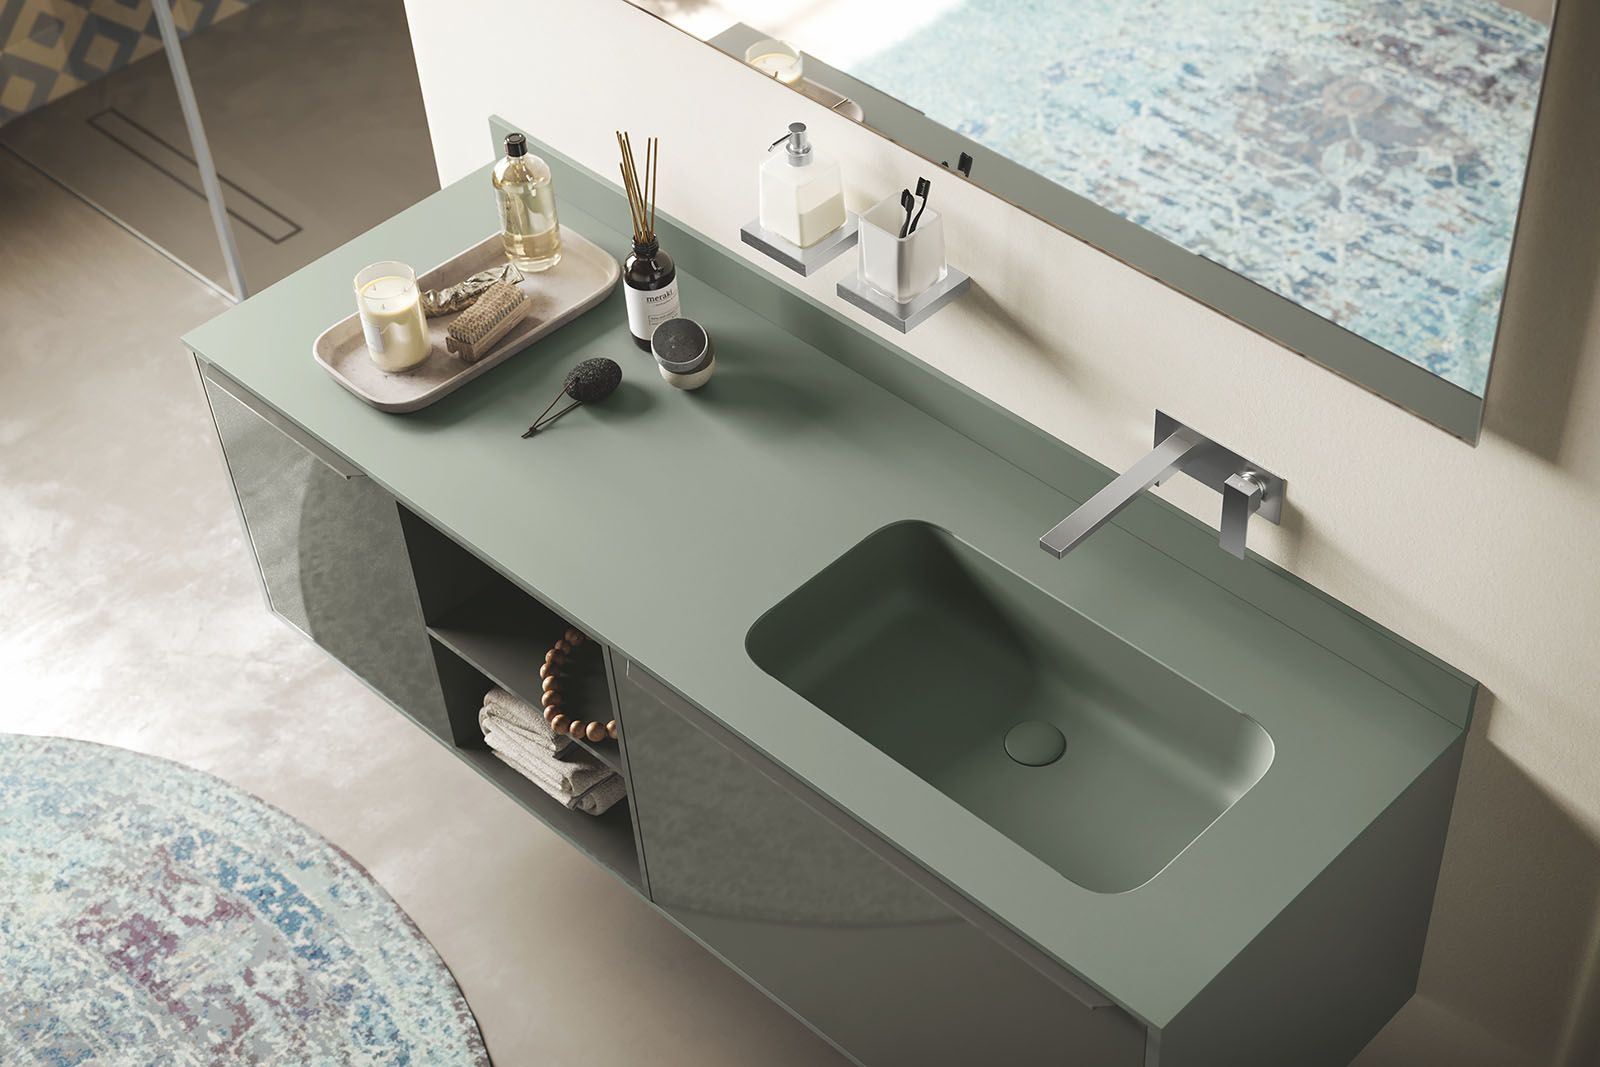 «Corretto», das italienische Wort für korrekt, steht für die richtige Entscheidung, wenn es um eine individuelle Badgestaltung geht, denn die neuste und umfassende Kollektion ermöglicht grösstmöglichen Gestaltungsfreiraum. Design: Studio Inda.